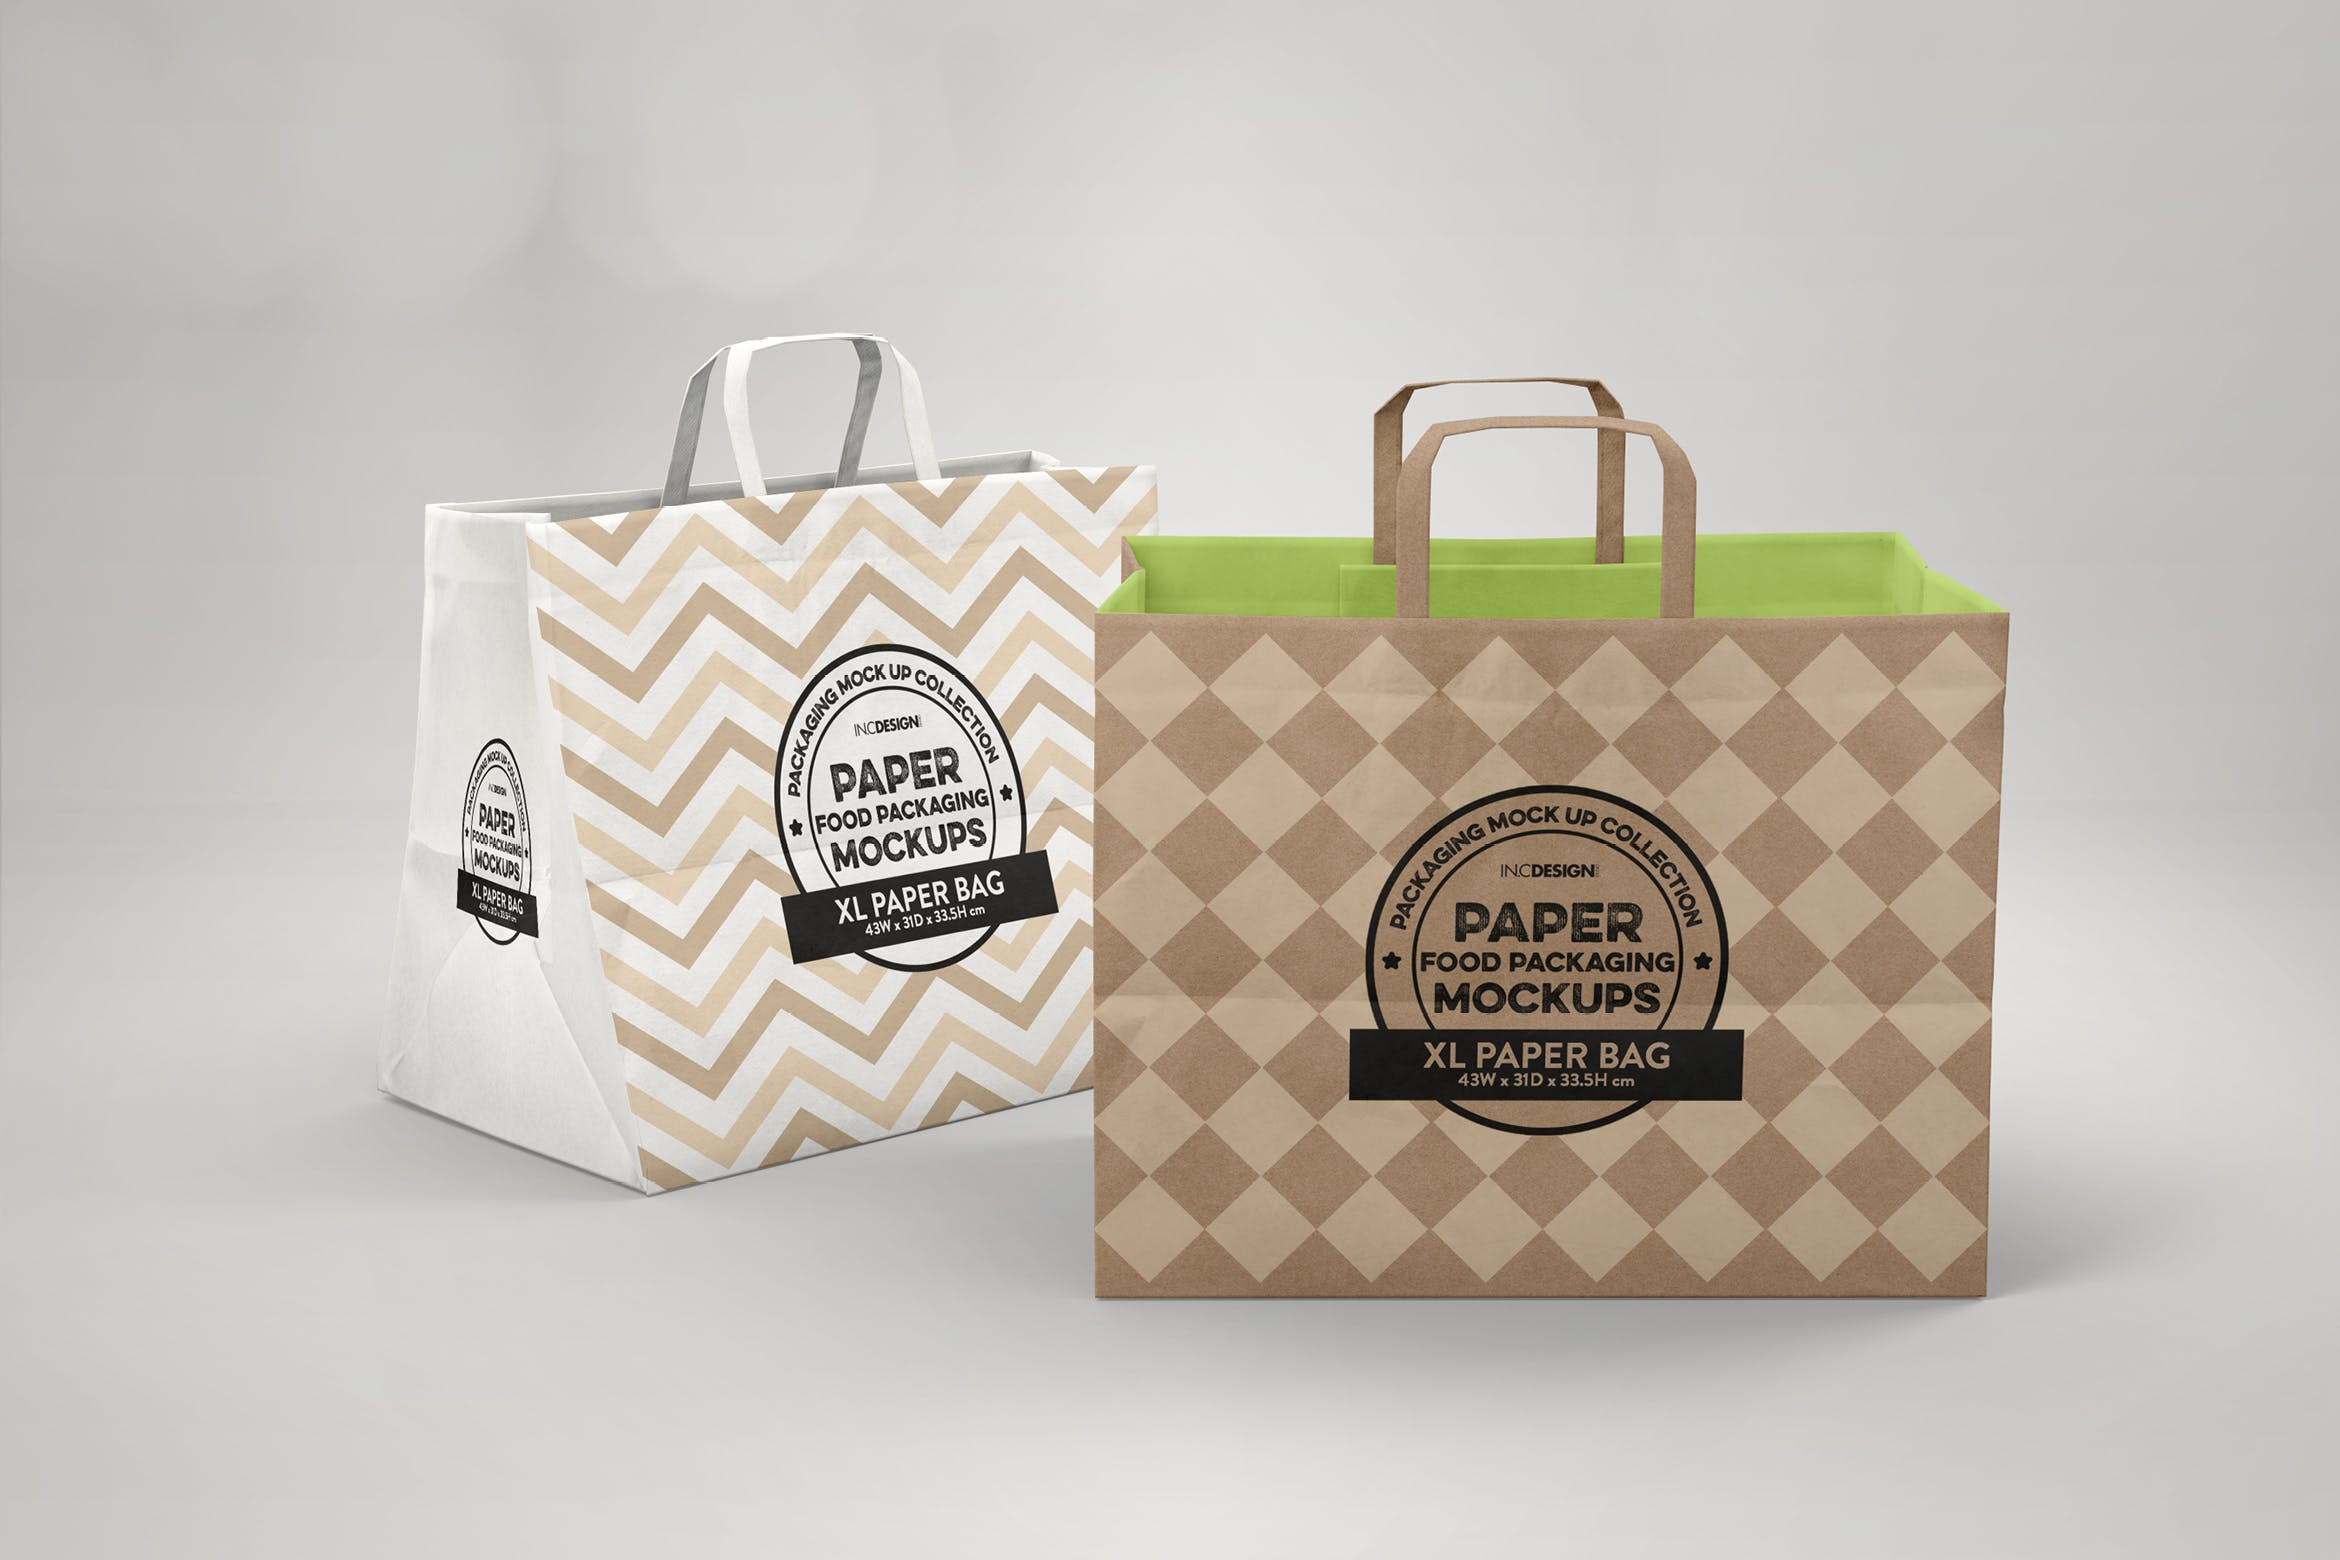 加大型购物纸袋设计图第一素材精选模板 XL Paper Bags with Flat Handles Mockup插图